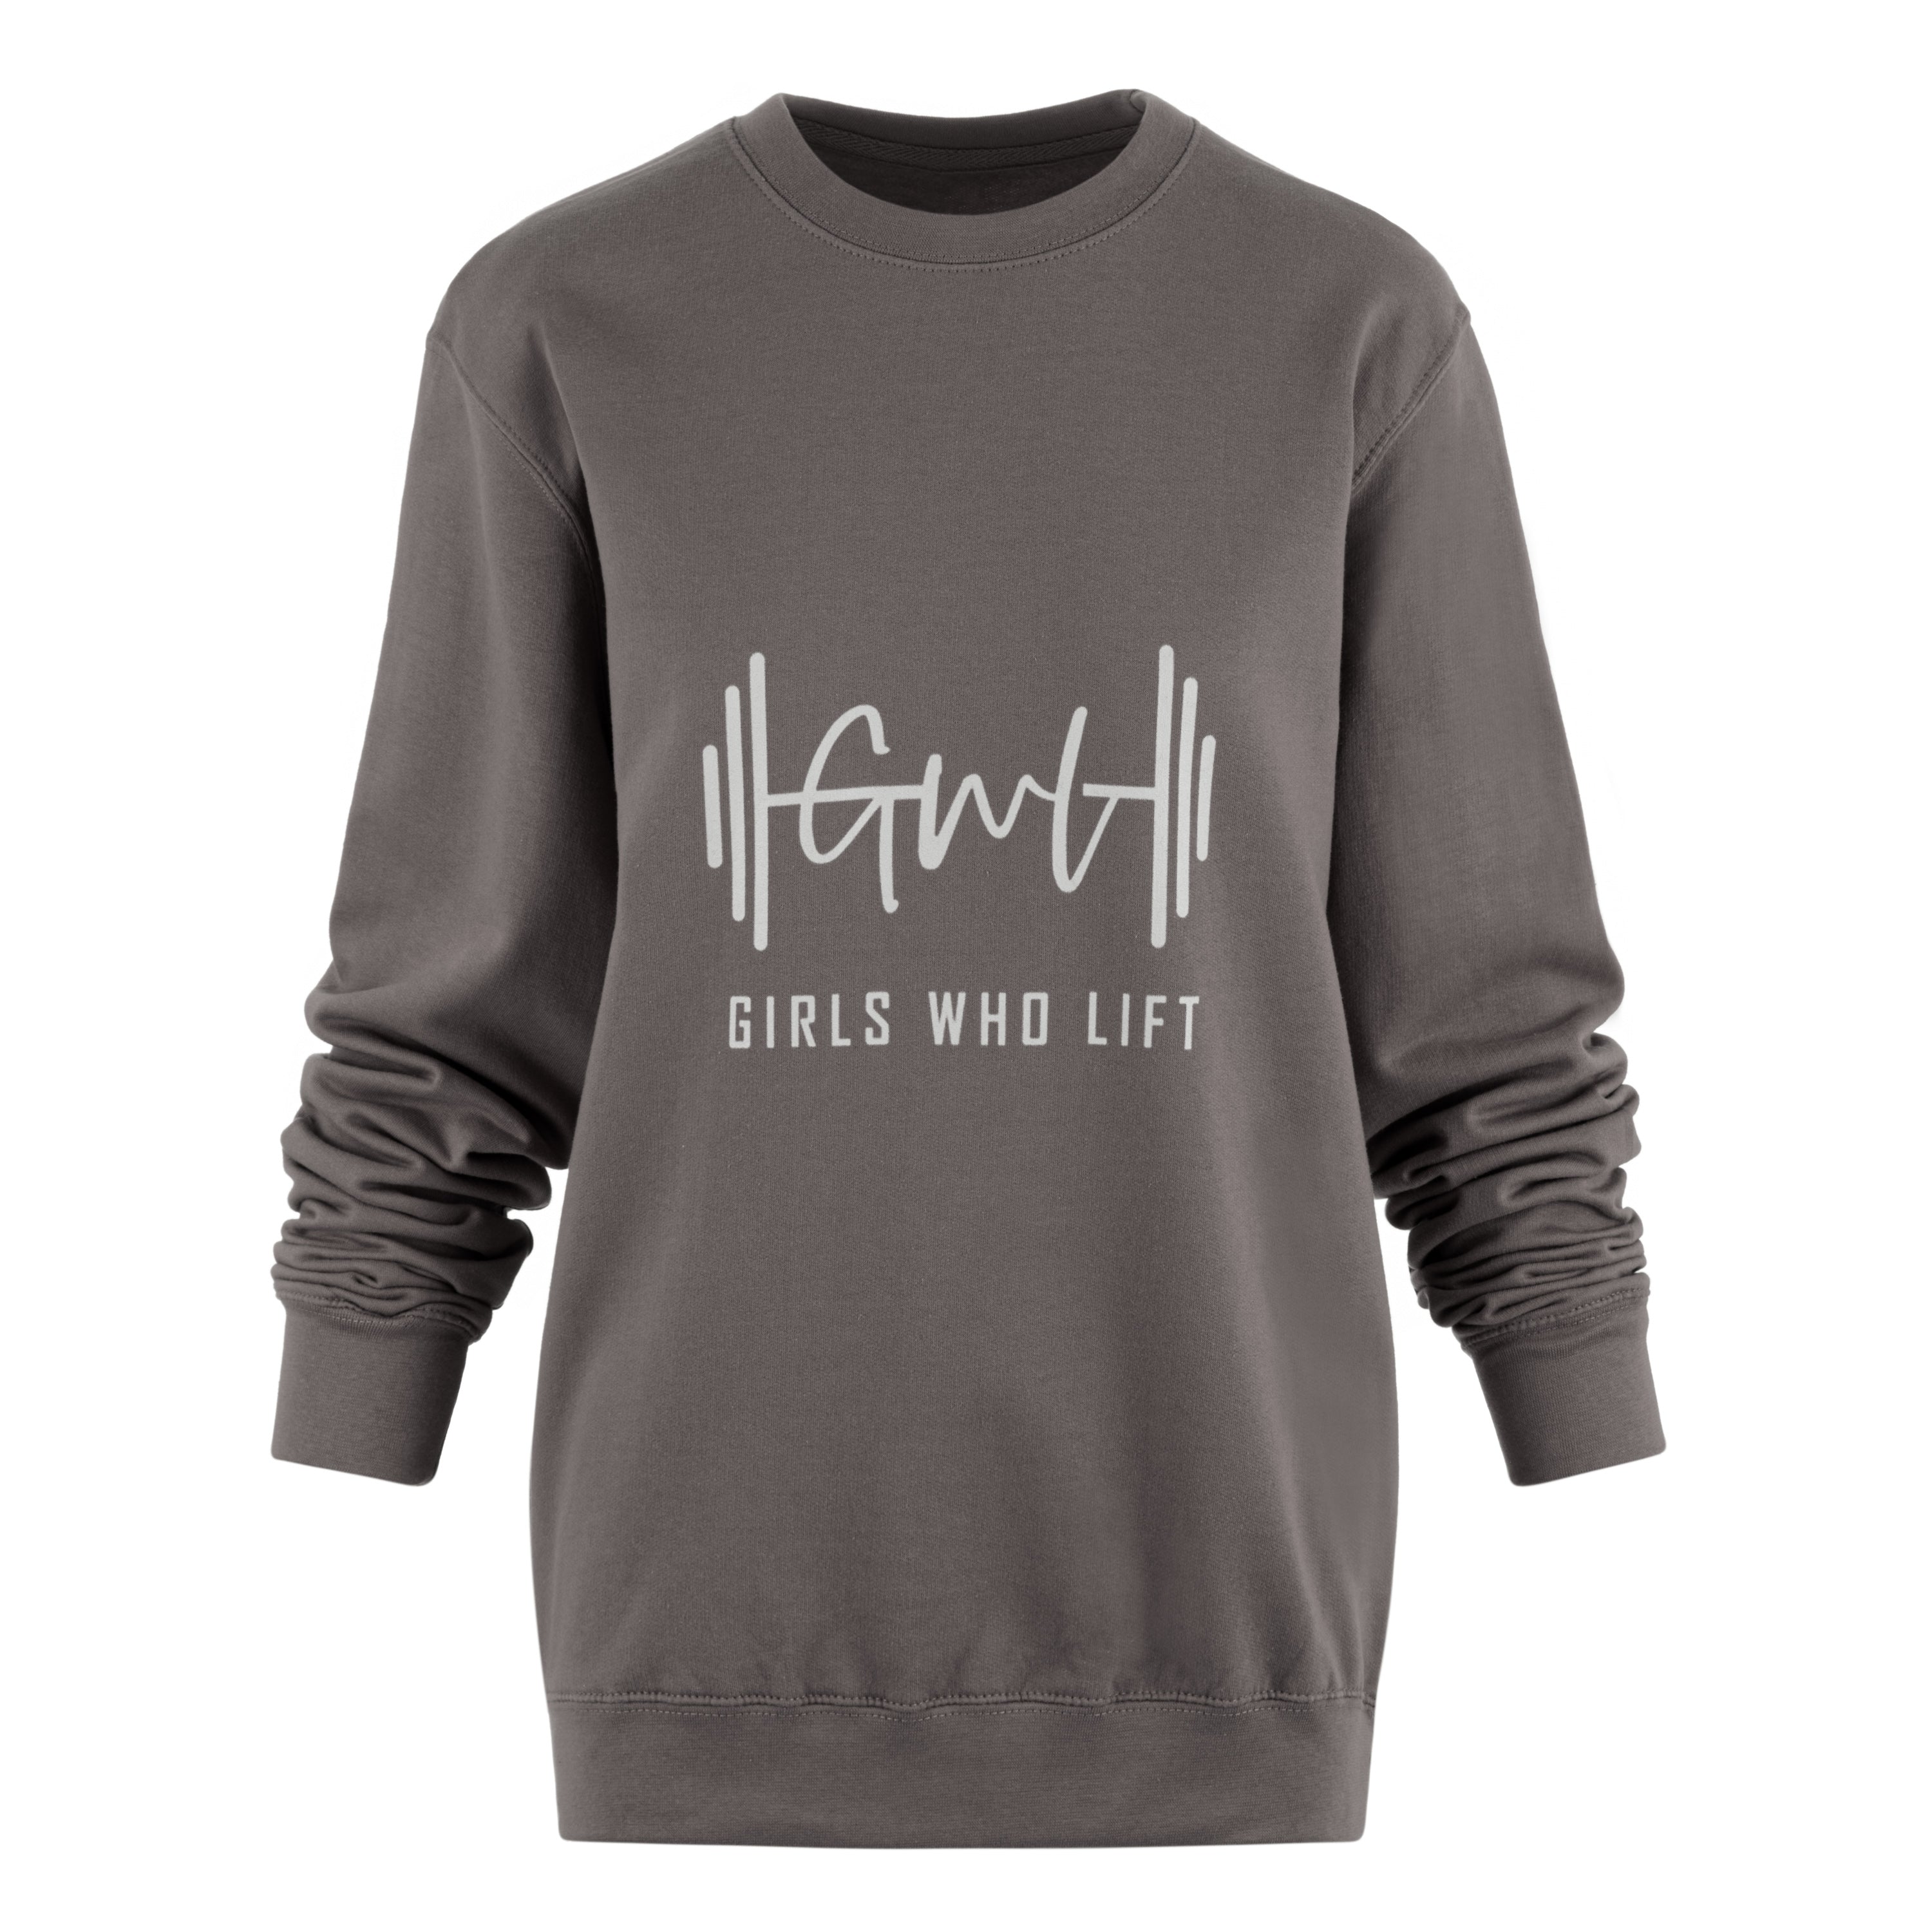 Girls Who Lift steel grey sweatshirt